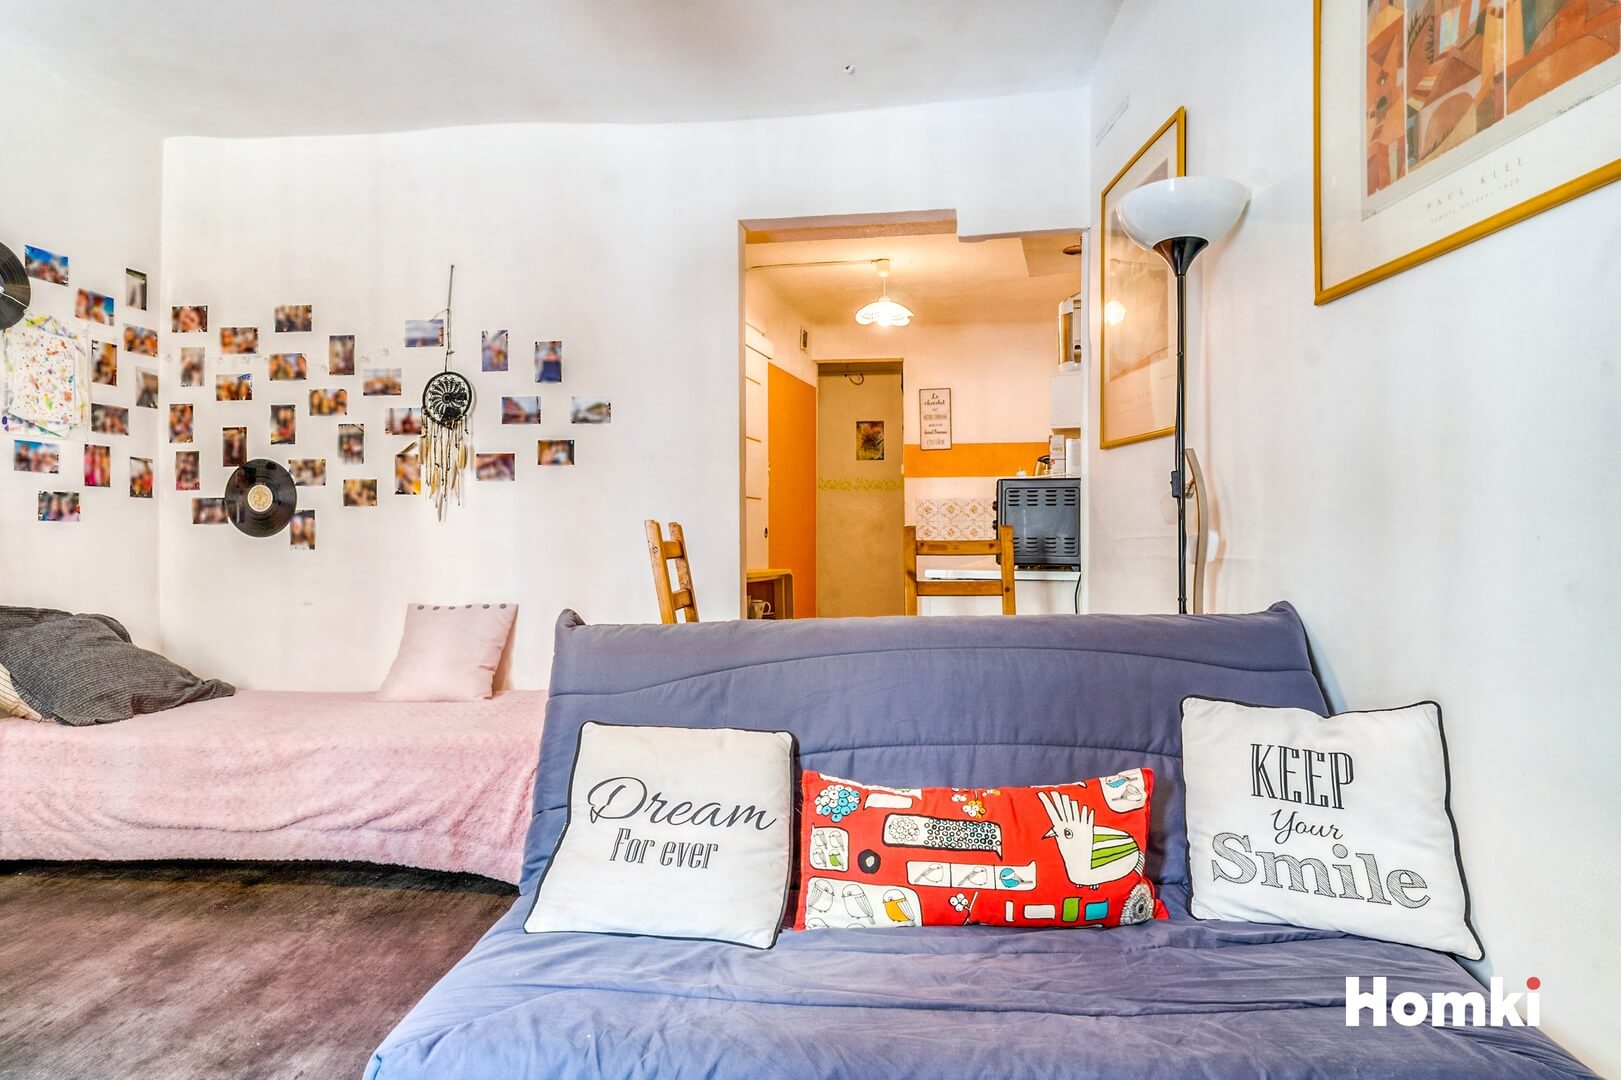 Homki - Vente Appartement  de 29.0 m² à Aix-en-Provence 13100